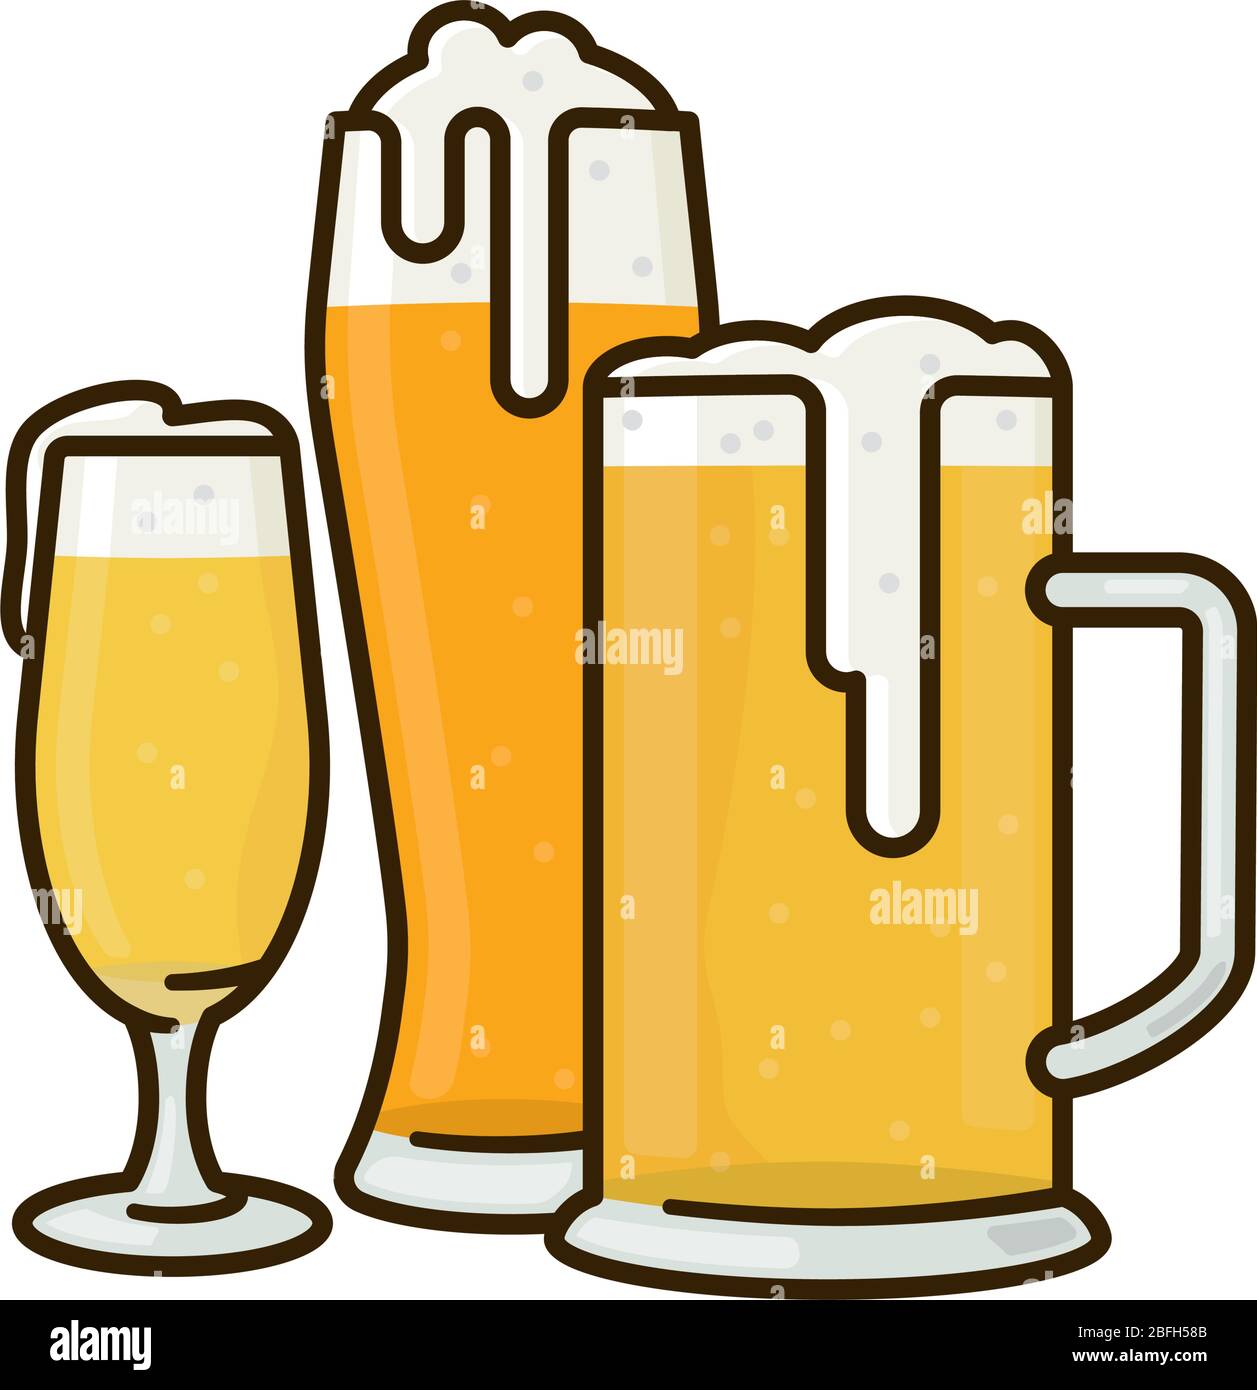 Variété de verres à bière illustration vectorielle isolée pour la fête de la bière allemande le 23 avril. Symbole des boissons alcoolisées traditionnelles. Illustration de Vecteur